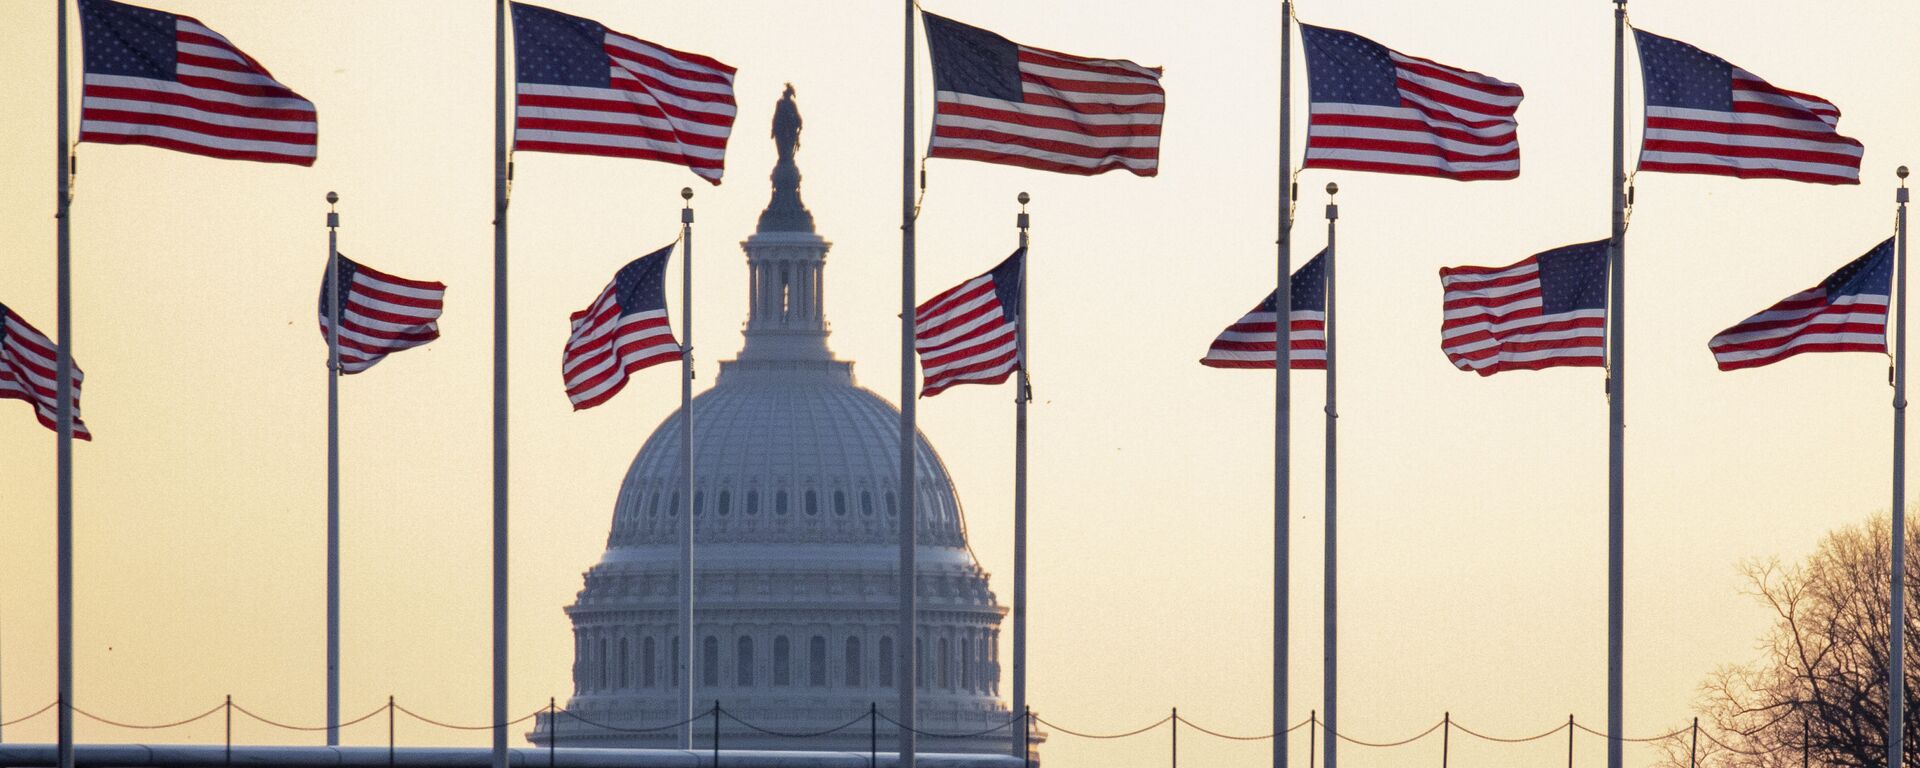 Cờ Mỹ trên nền của Điện Capitol ở Washington, Mỹ - Sputnik Việt Nam, 1920, 03.03.2021